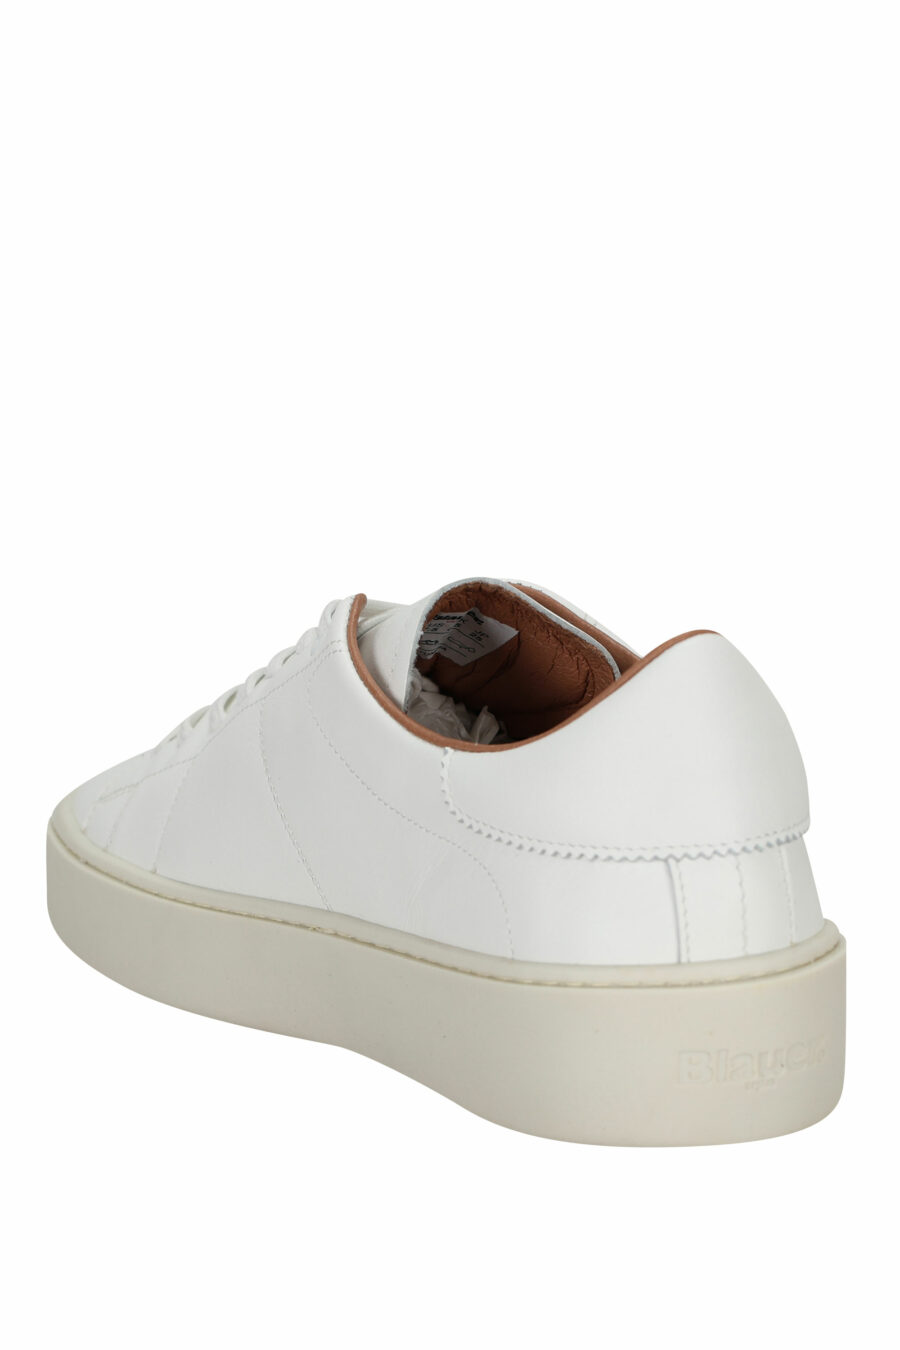 Zapatillas blancas de cuero con suela blanca "staten" - 8058156550322 3